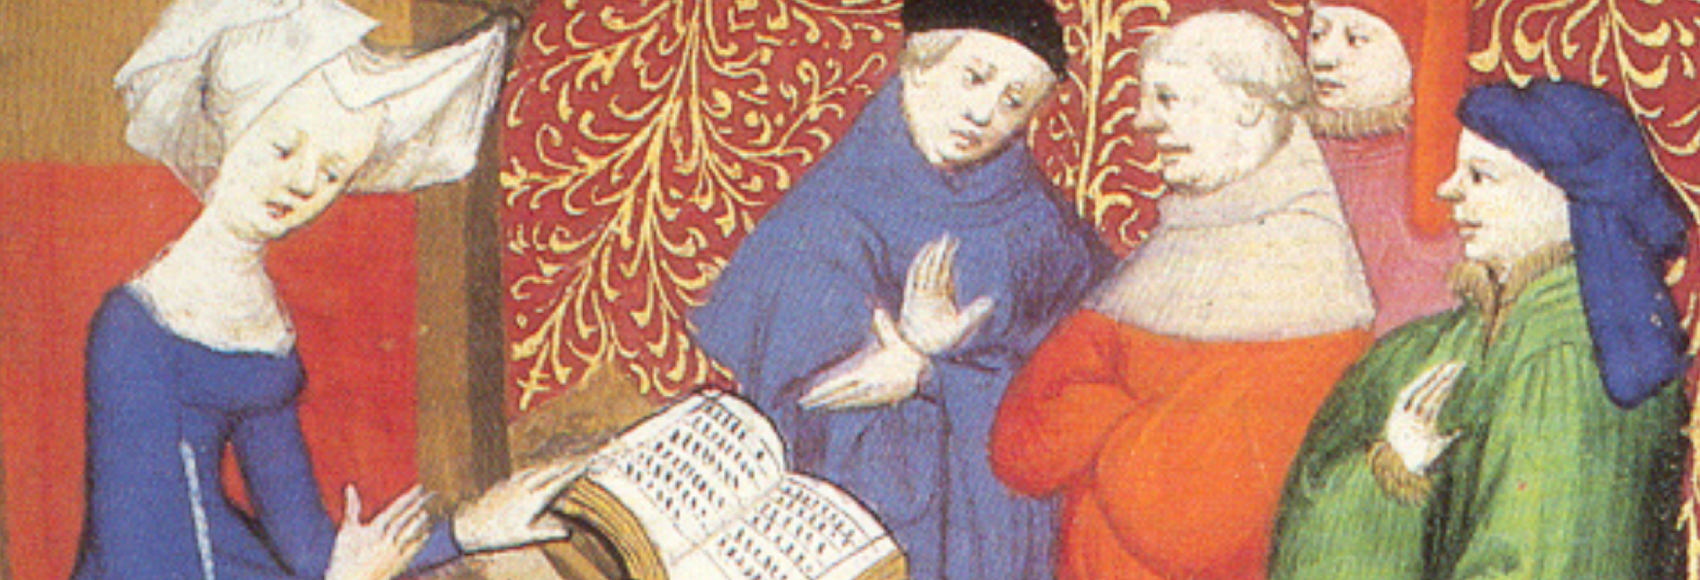 Eine Frau - Christine de Pisan - liest vor und diskutiert mit vier Männern